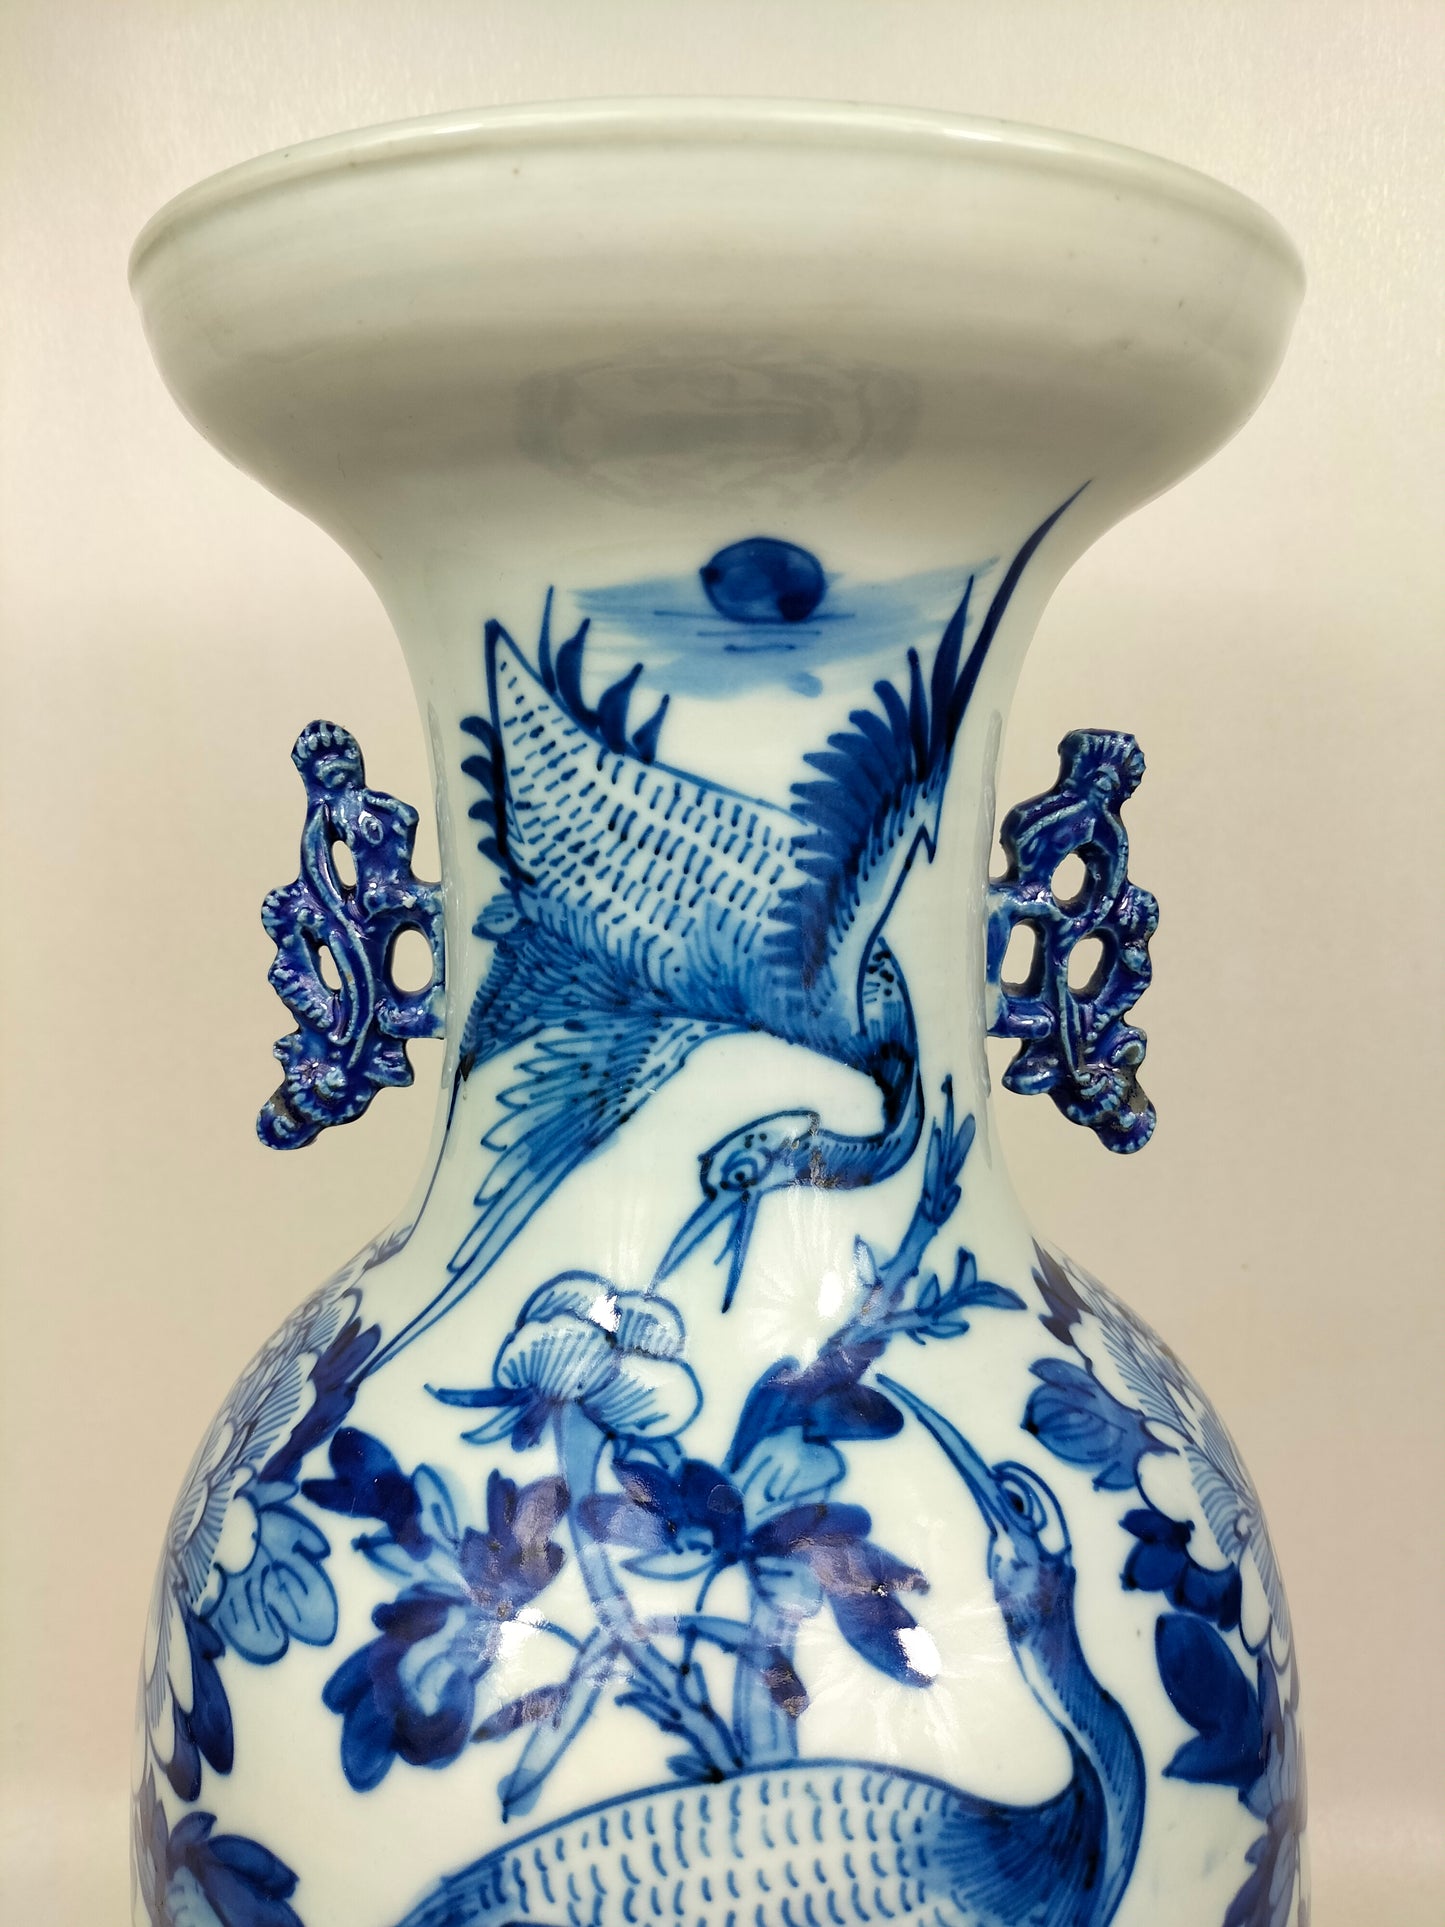 Grand vase chinois antique avec grues et fleurs // Bleu et blanc - Dynastie Qing - 19ème siècle